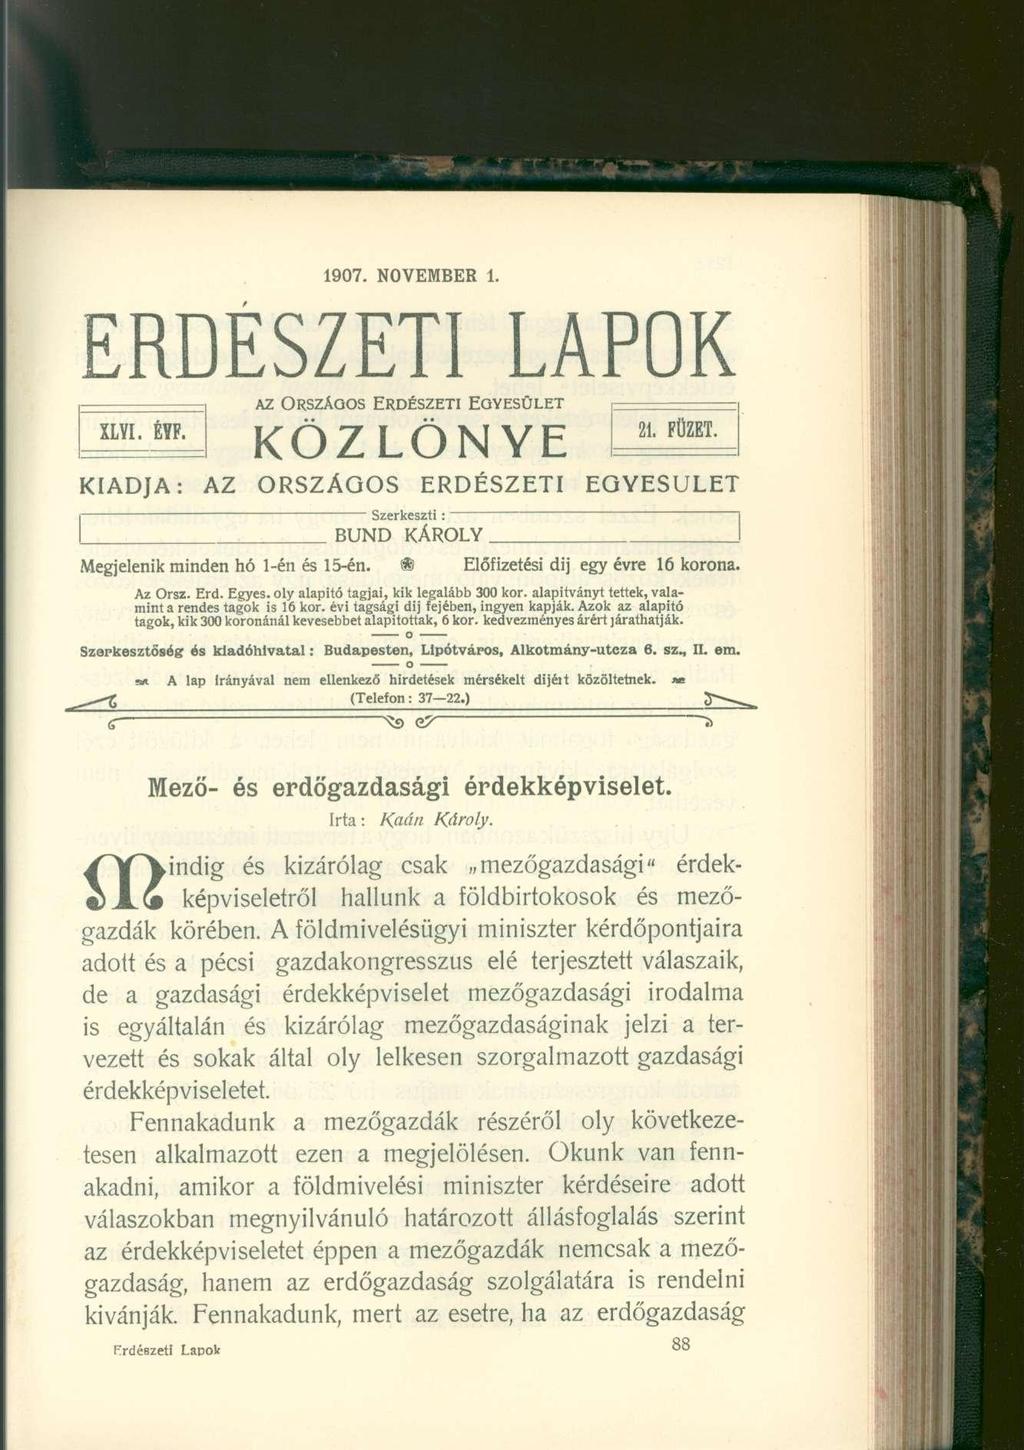 1907. NOVEMBER 1. ERDÉSZETI LAPOK AZ ORSZÁGOS ERDÉSZETI EGYESÜLET KÖZLÖNYE XLVI. ÉYF. I X / \ 7 I A m \ / C 21. FÜZET.